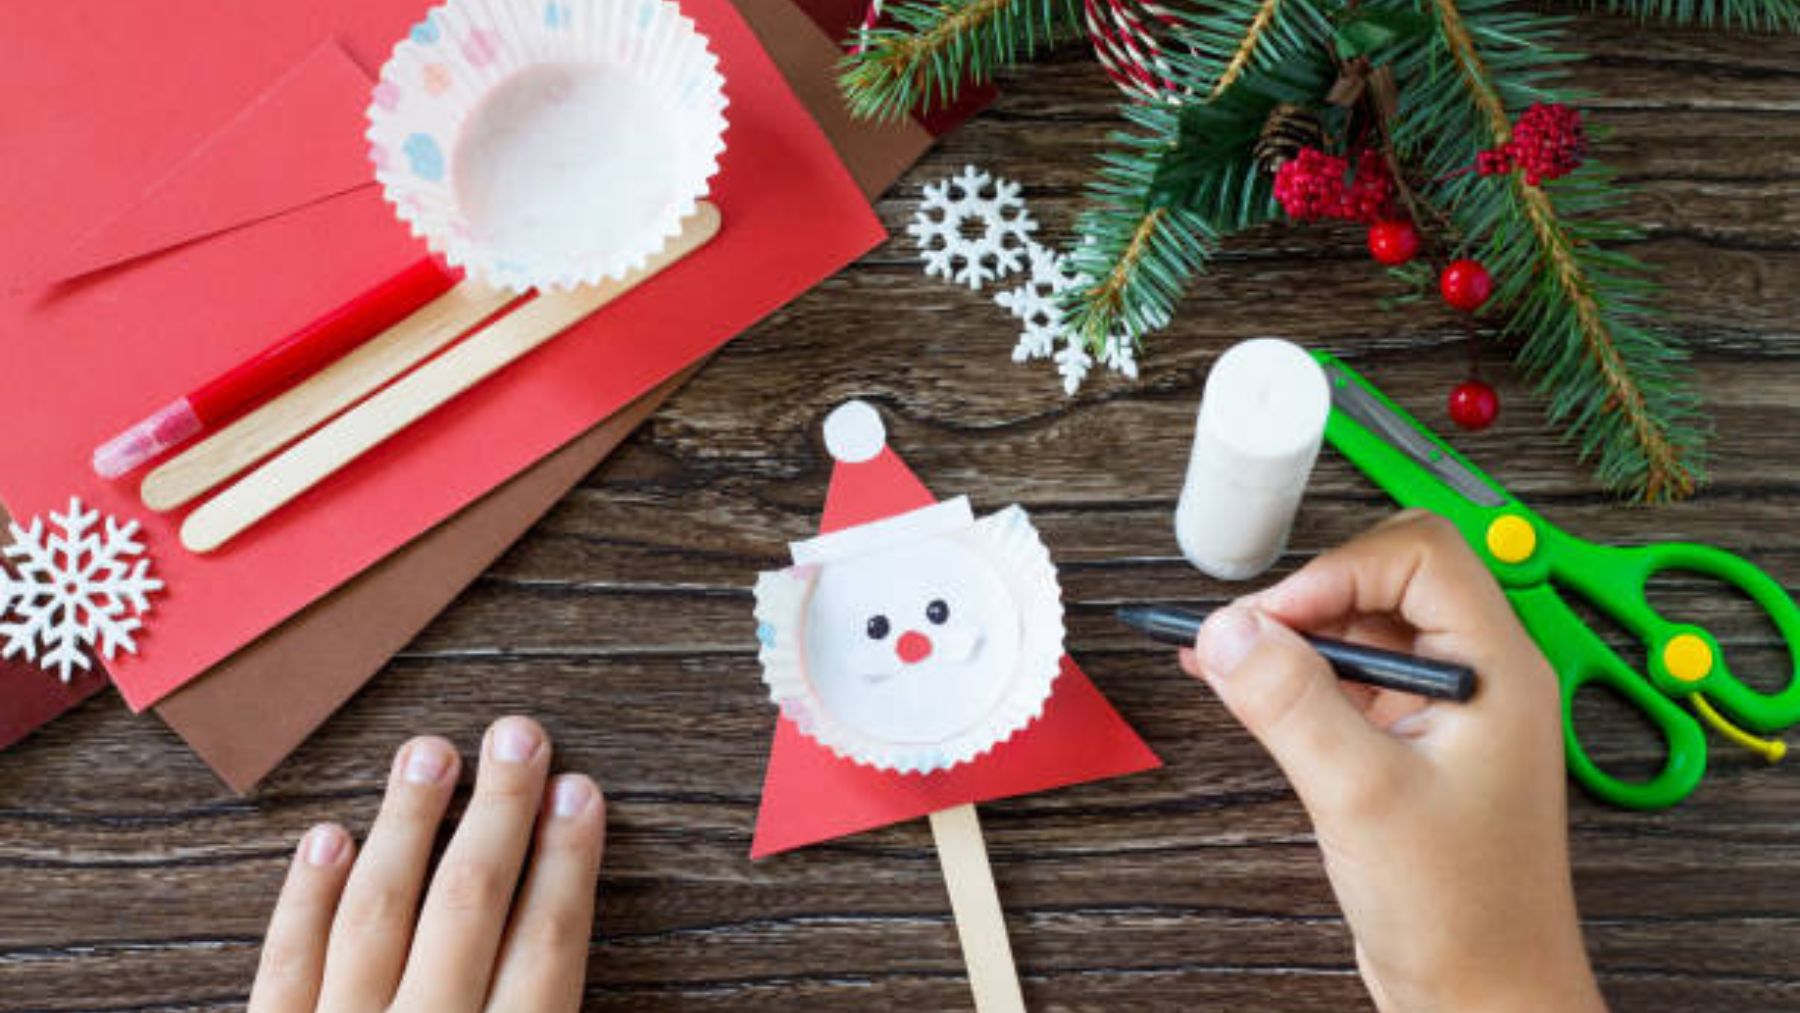 Descubre las ideas de manualidades navideñas que puedes hacer con los niños